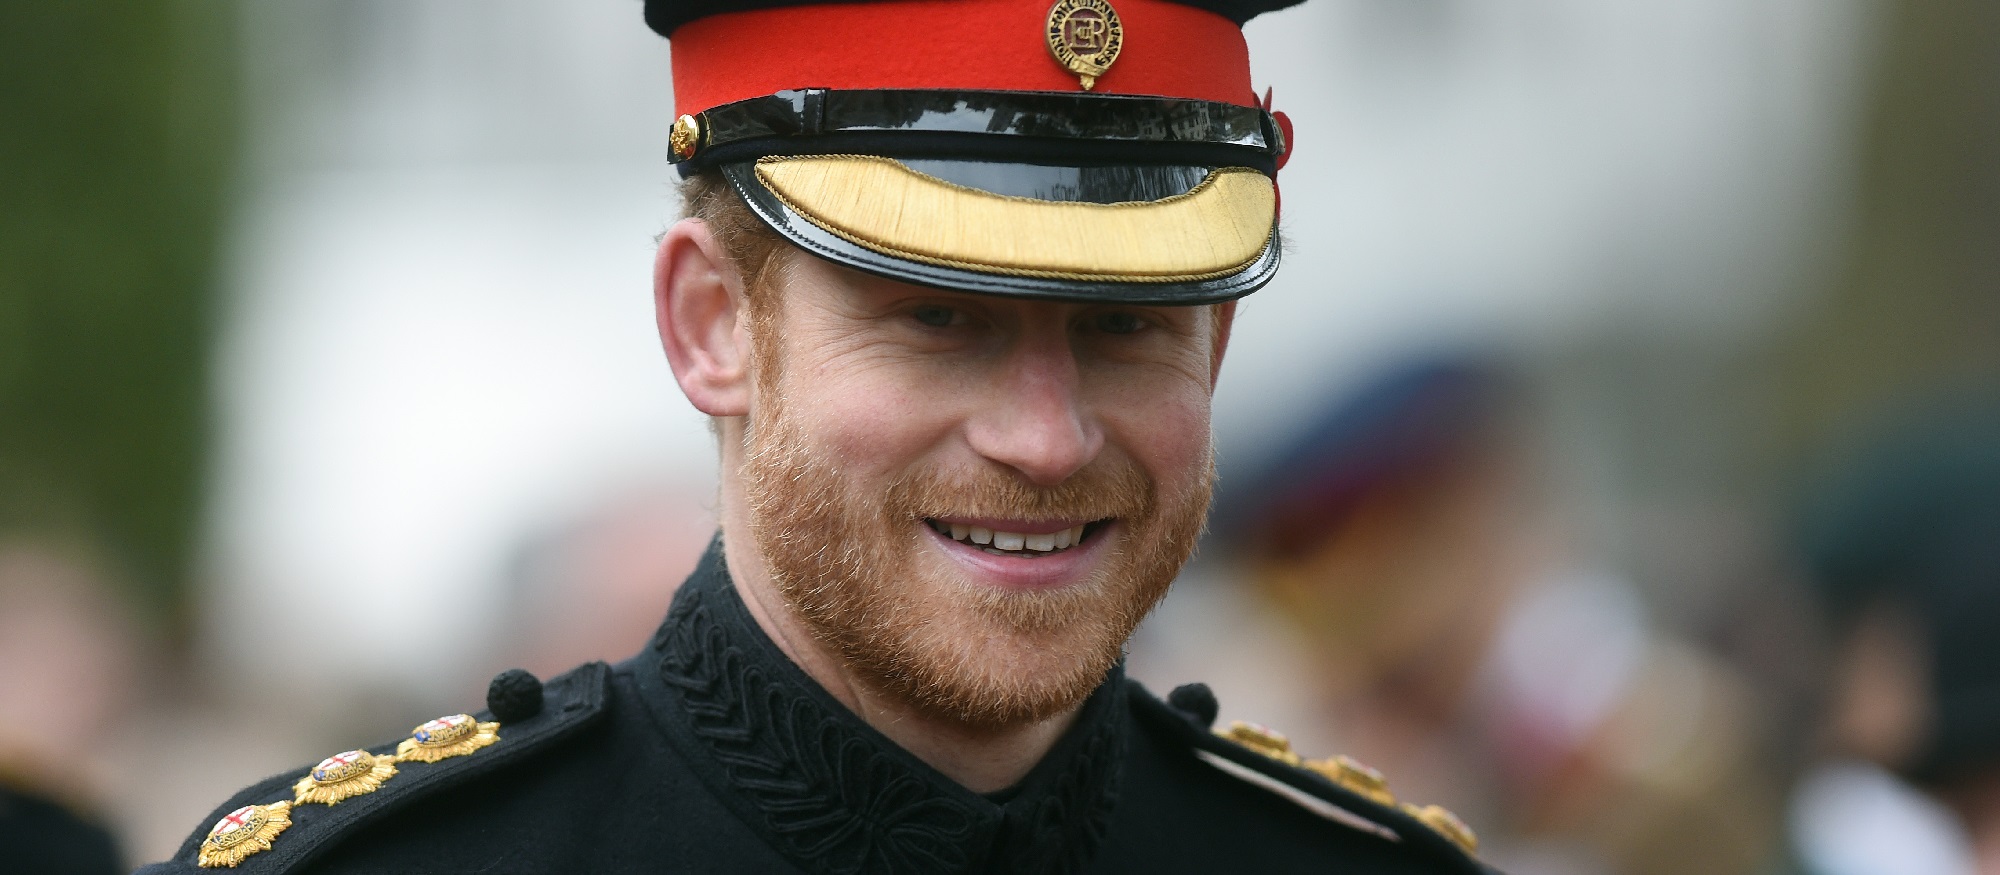 Príncipe Harry dará la "pelea": quiere mantener títulos militares pese a negativa de la reina Isabel